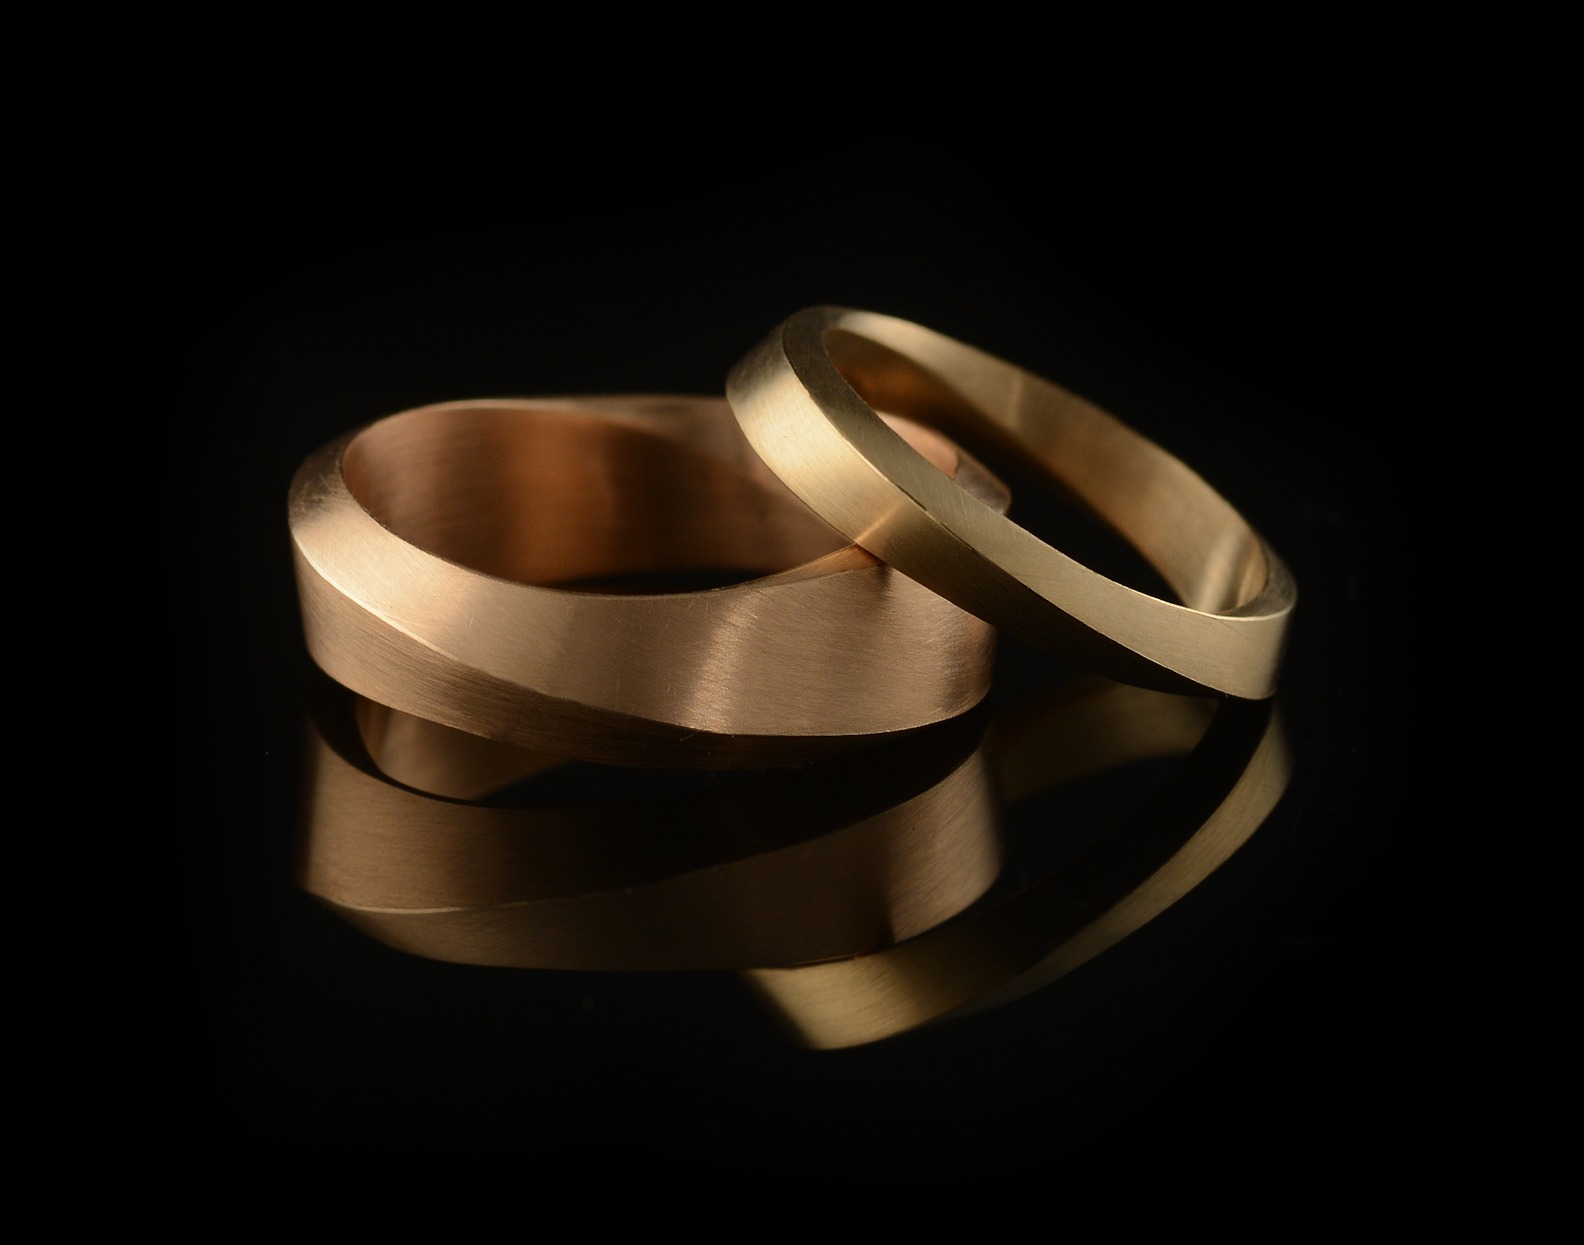 Mobius wedding rings for men - 18 carat rose gold - McCaul Goldsmiths London